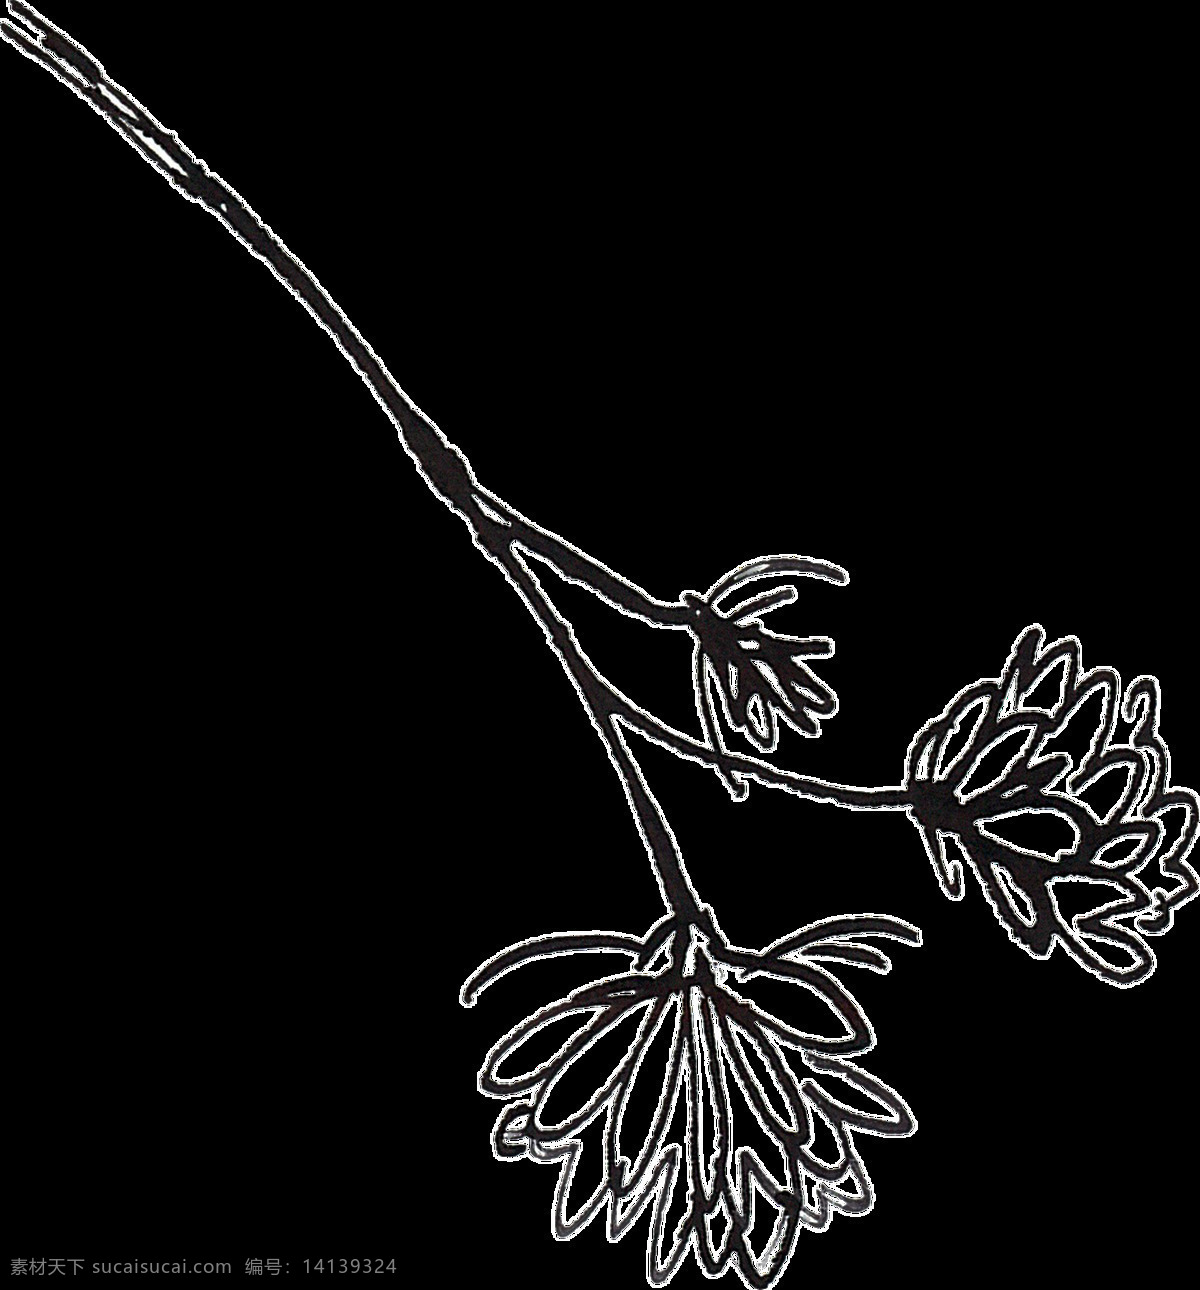 黑白 植物 卡通 透明 抠图专用 装饰 设计素材